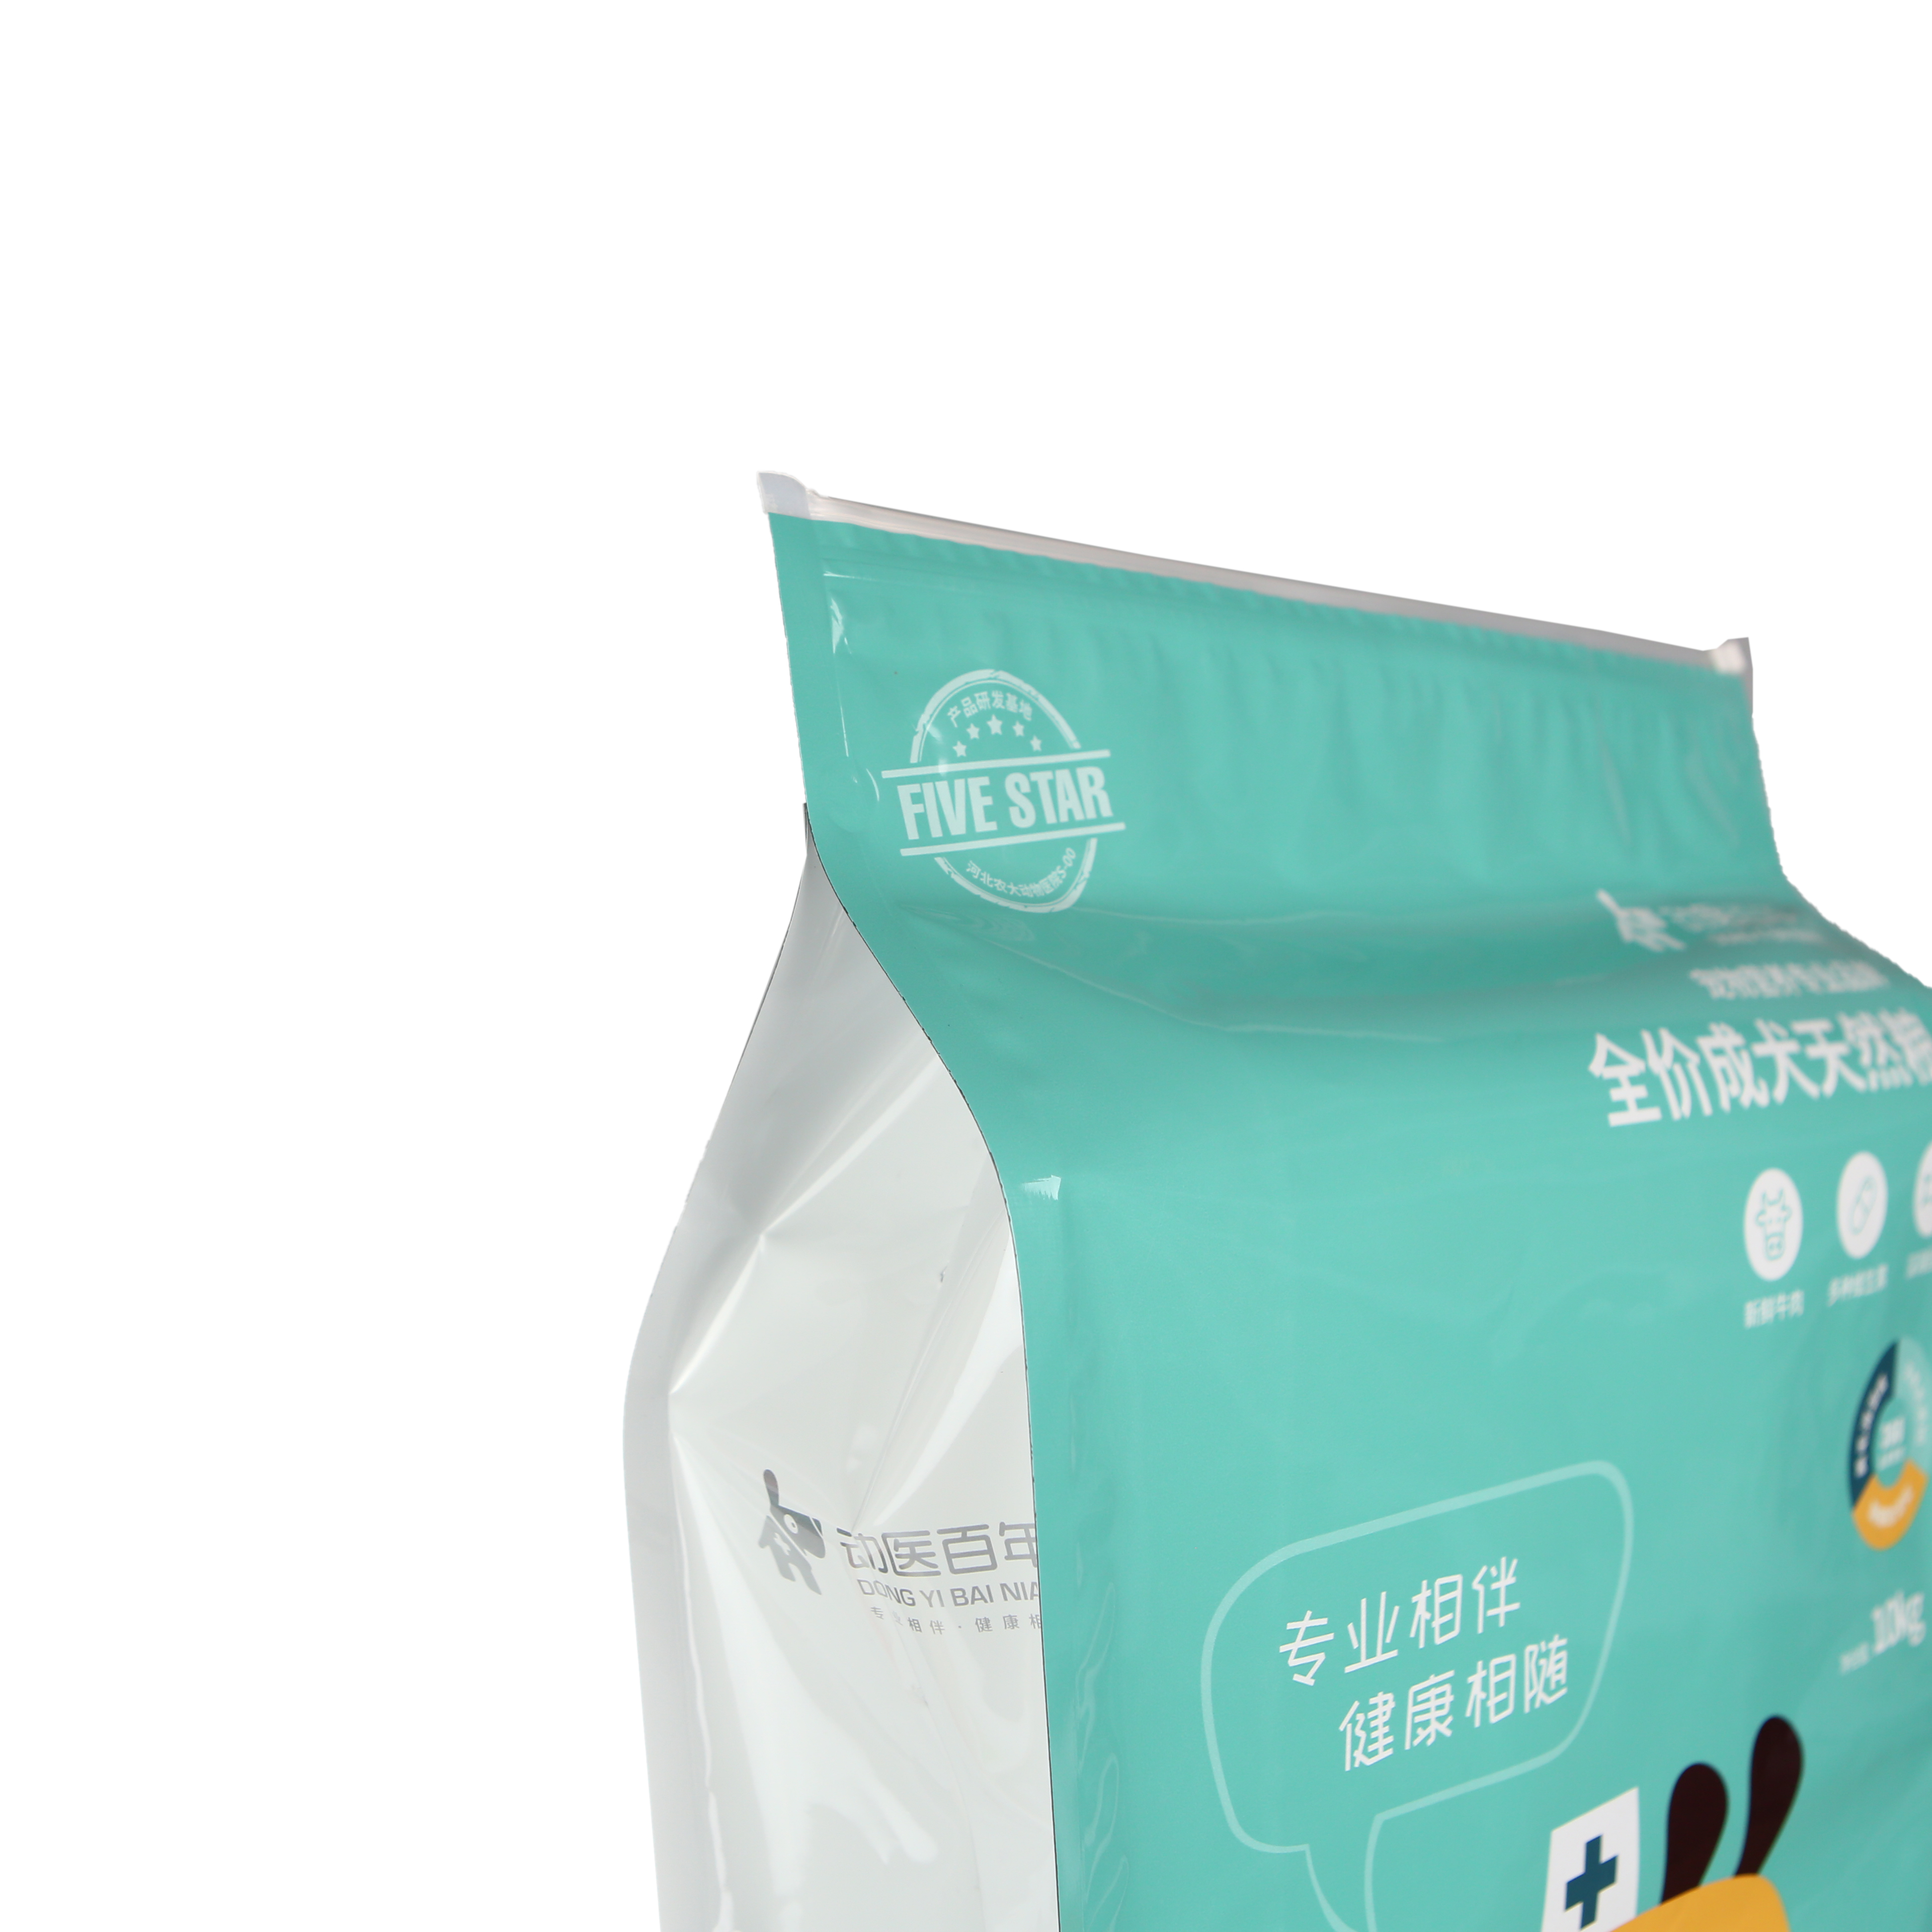 15kg pet food packaging